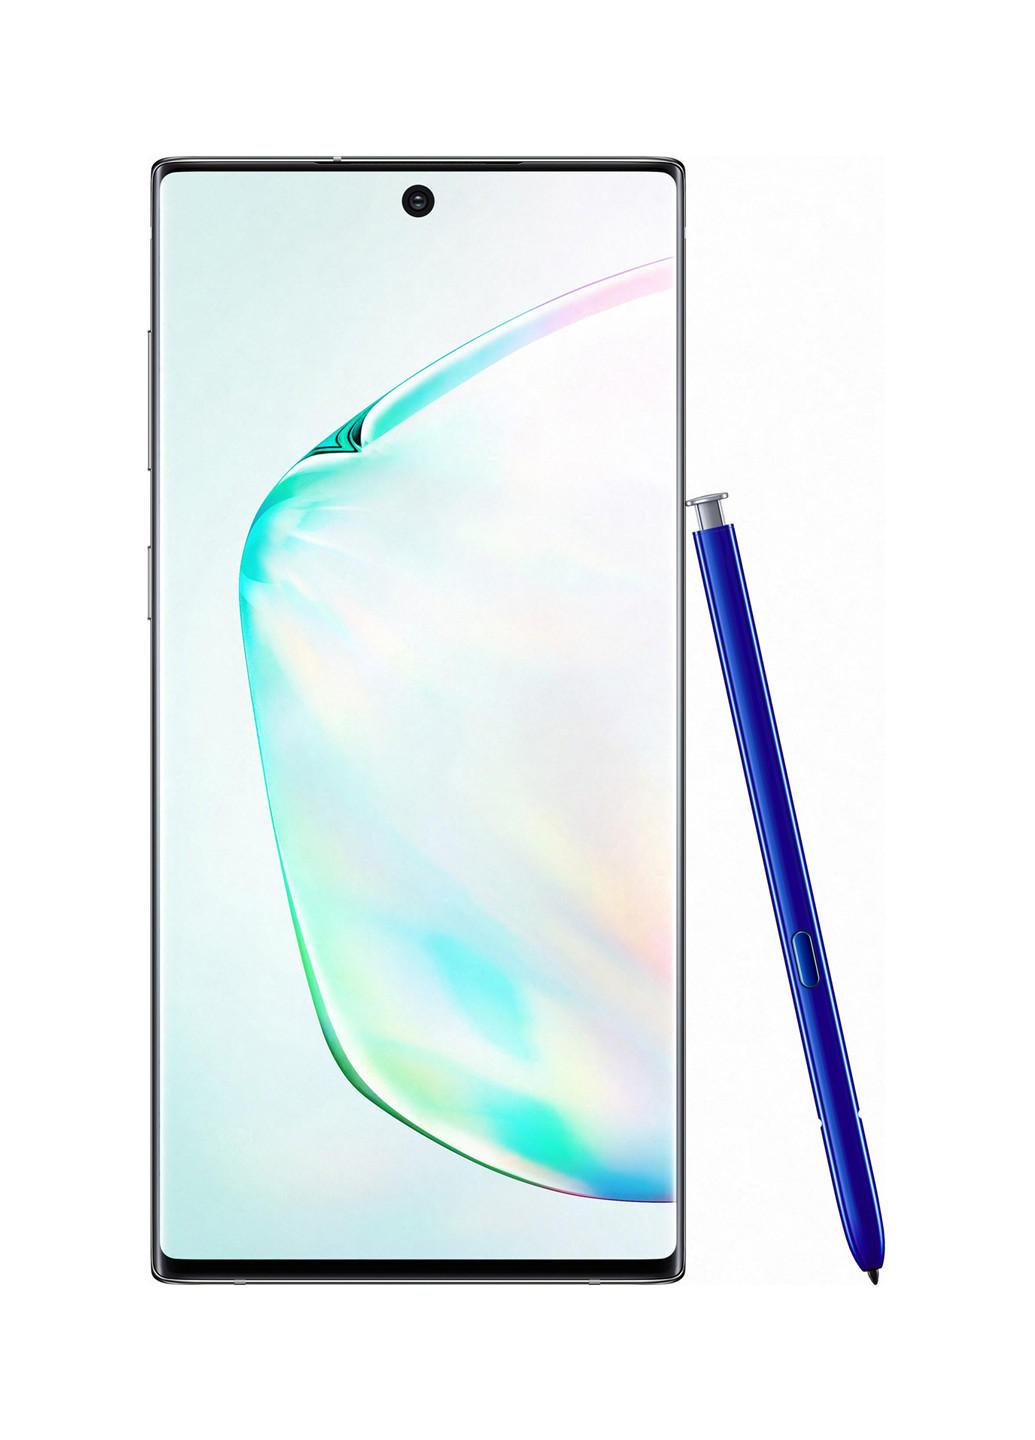 Смартфон Galaxy Note 10 2019 8 / 256Gb Aura Glow (SM-N970FZSDSEK) Samsung galaxy note 10 2019 8/256gb aura glow (sm-n970fzsdsek) (162563156)